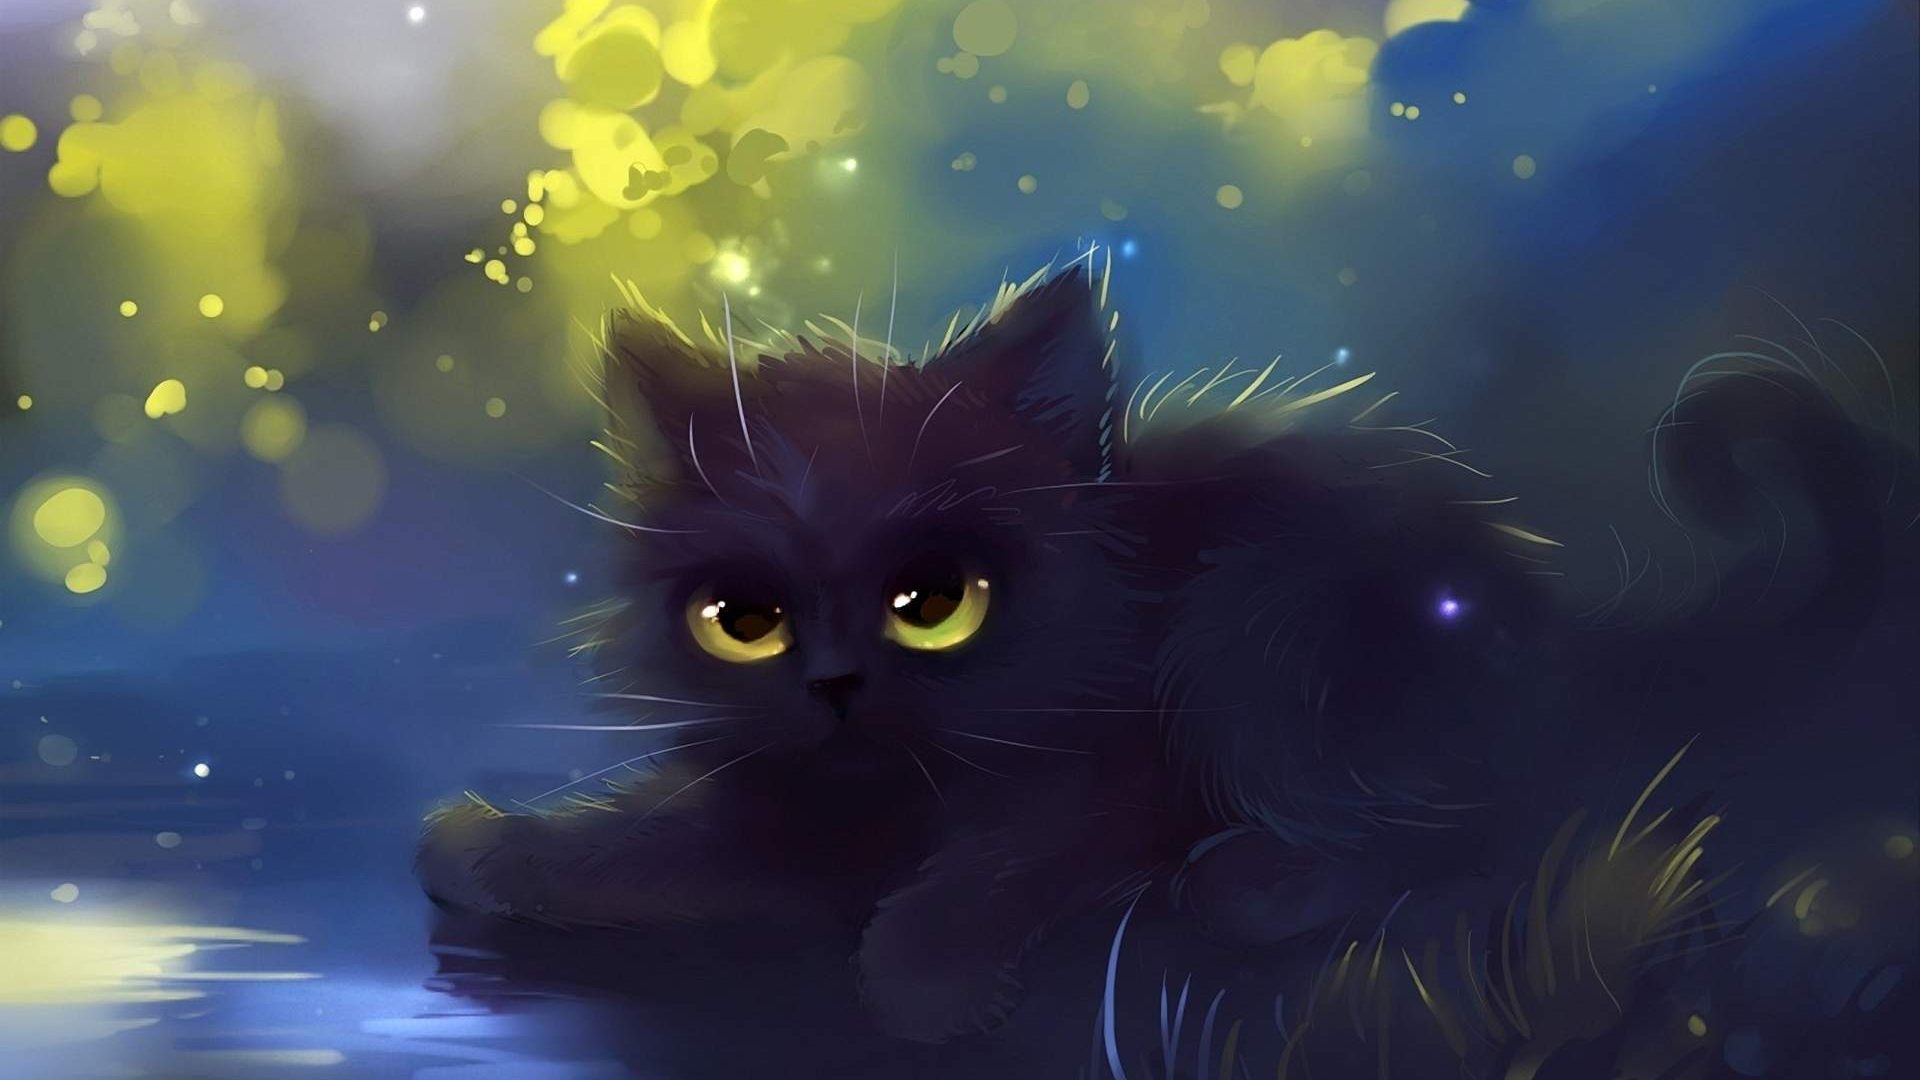 Cute Black Cat Painting Wallpaper